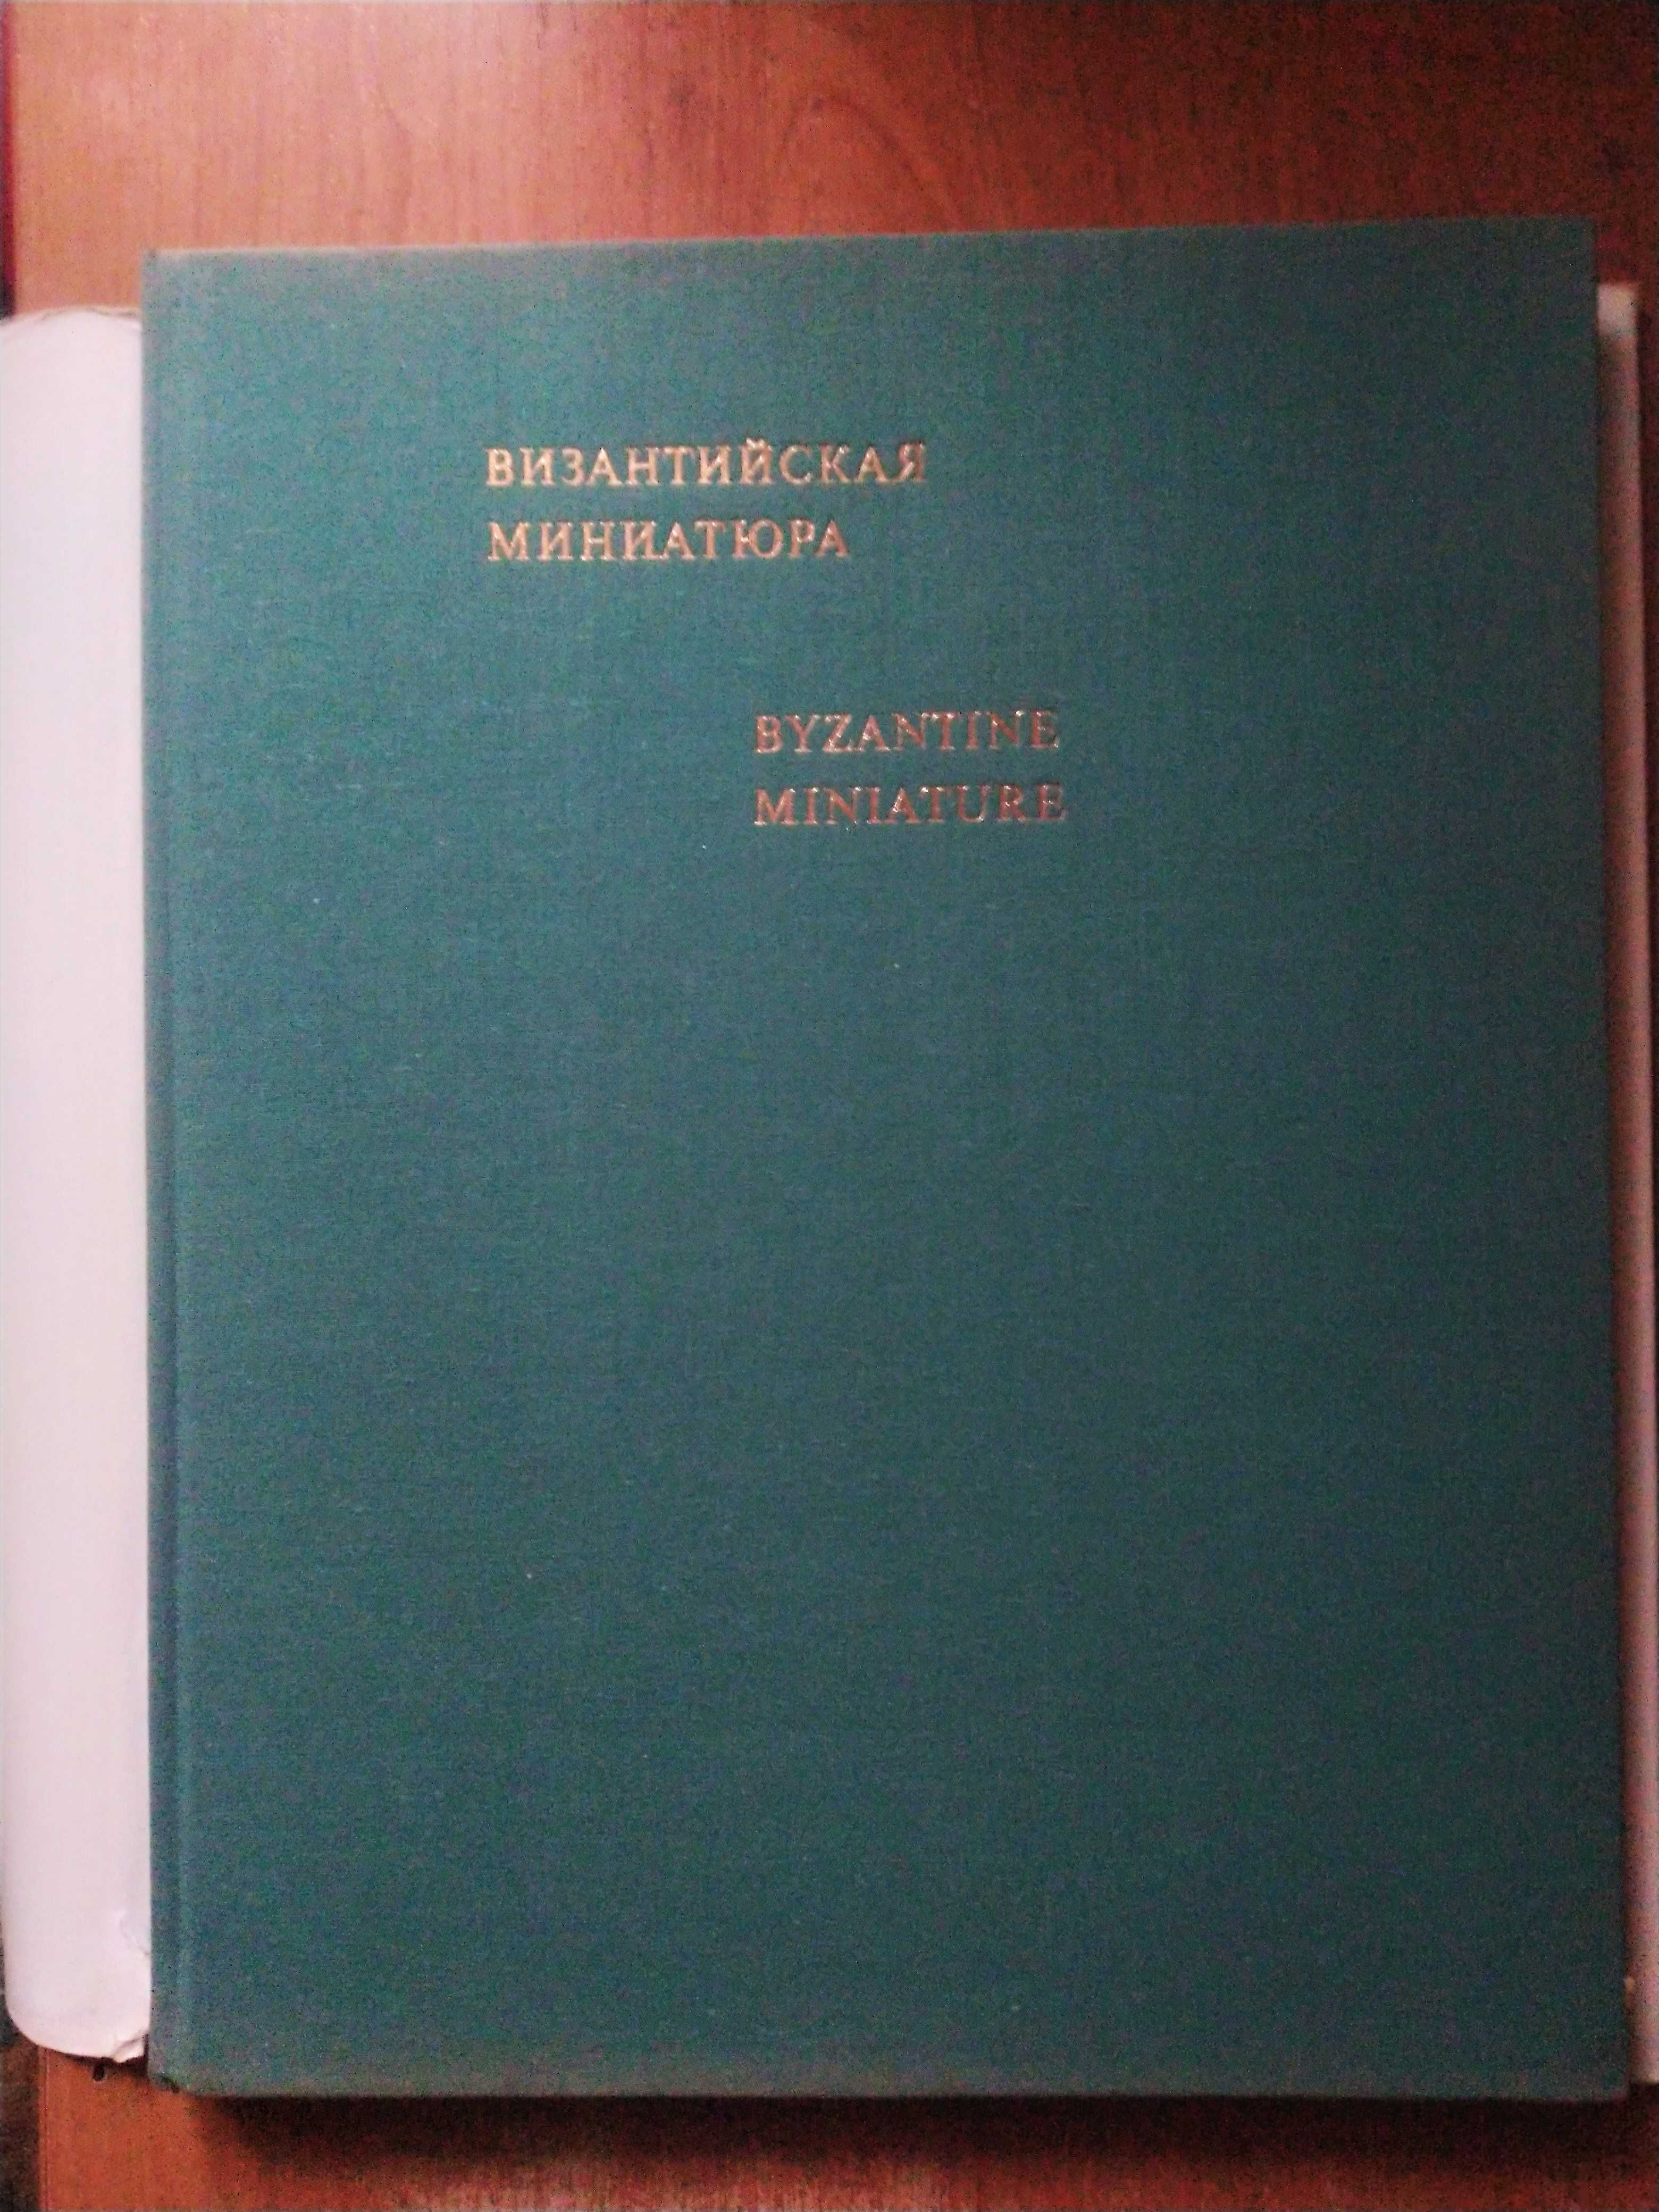 Альбом "Византийская миниатюра", 1972